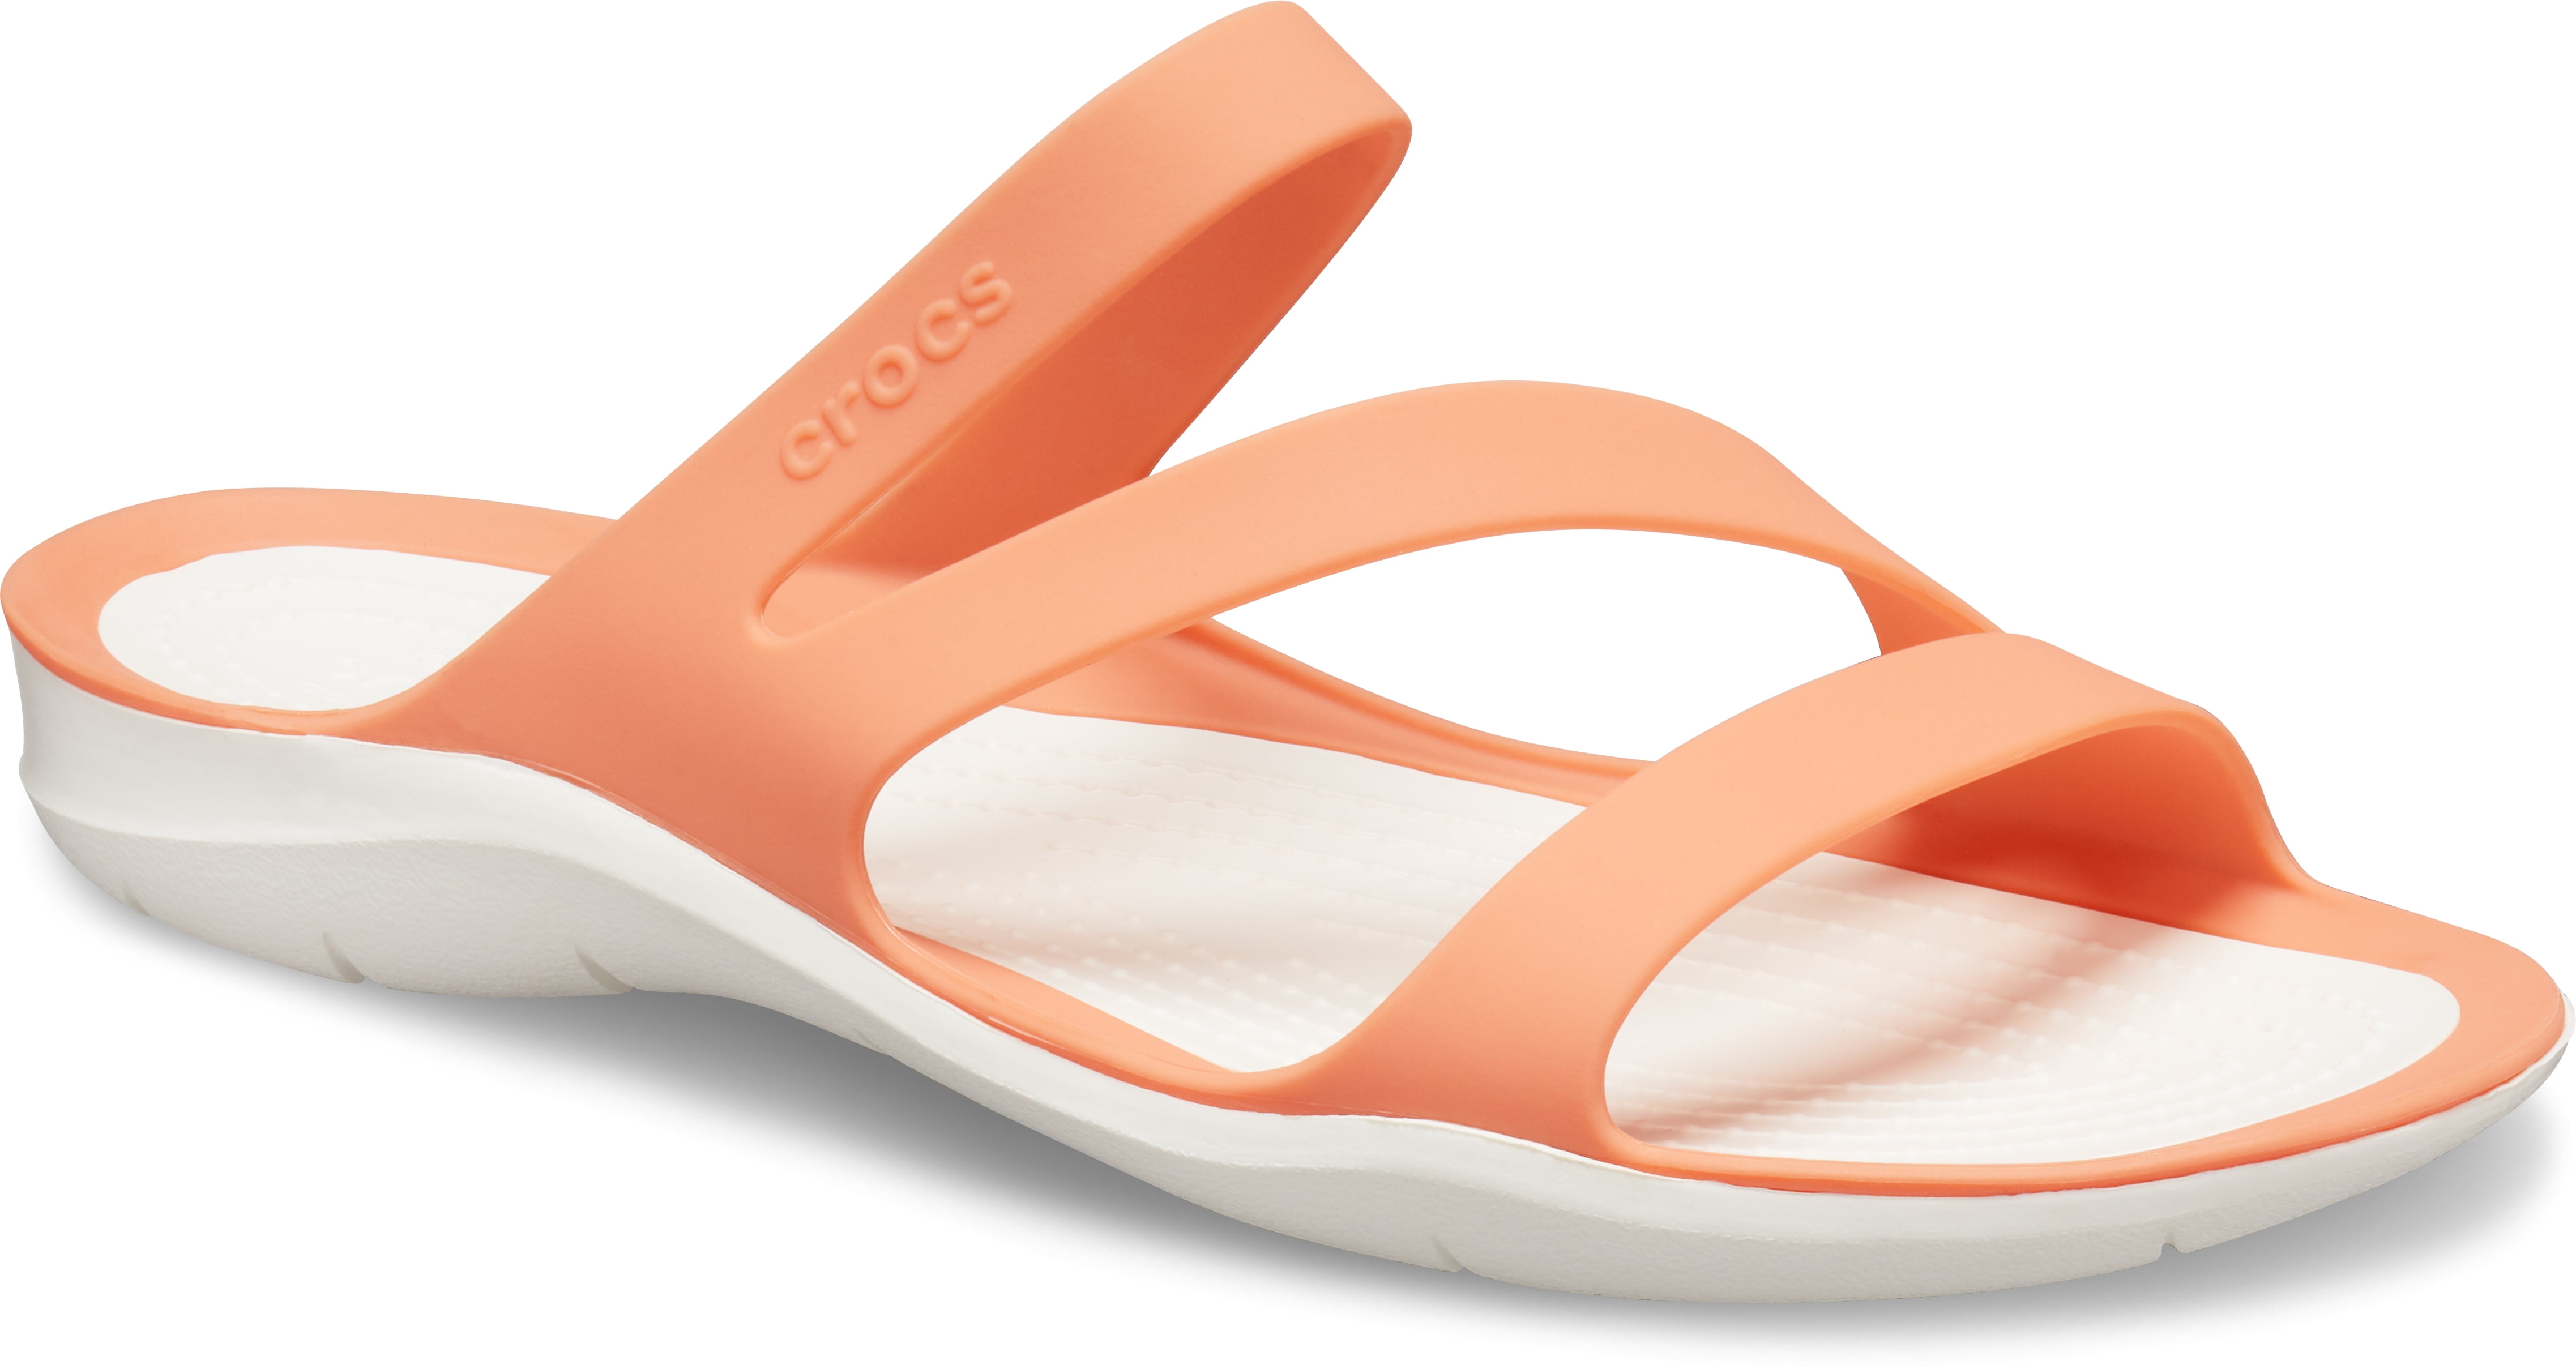 Crocs Swiftwater Flip Flops Sandals for Women